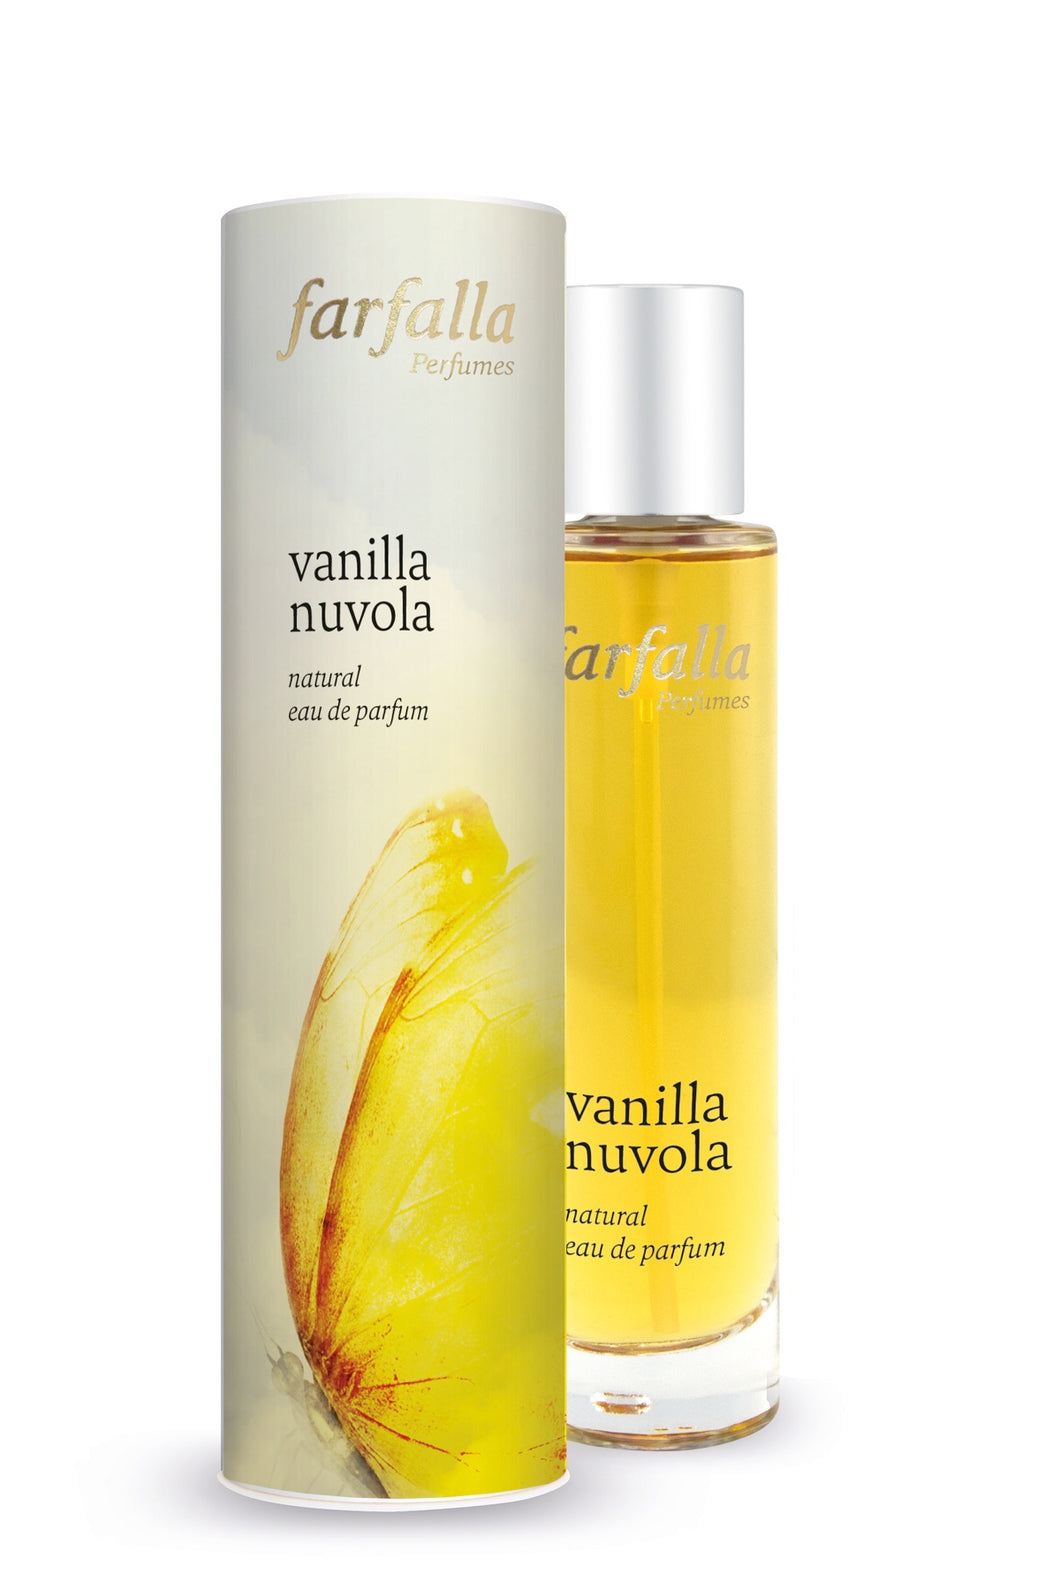 vanilla nuvola, natural eau de parfum, 50ml